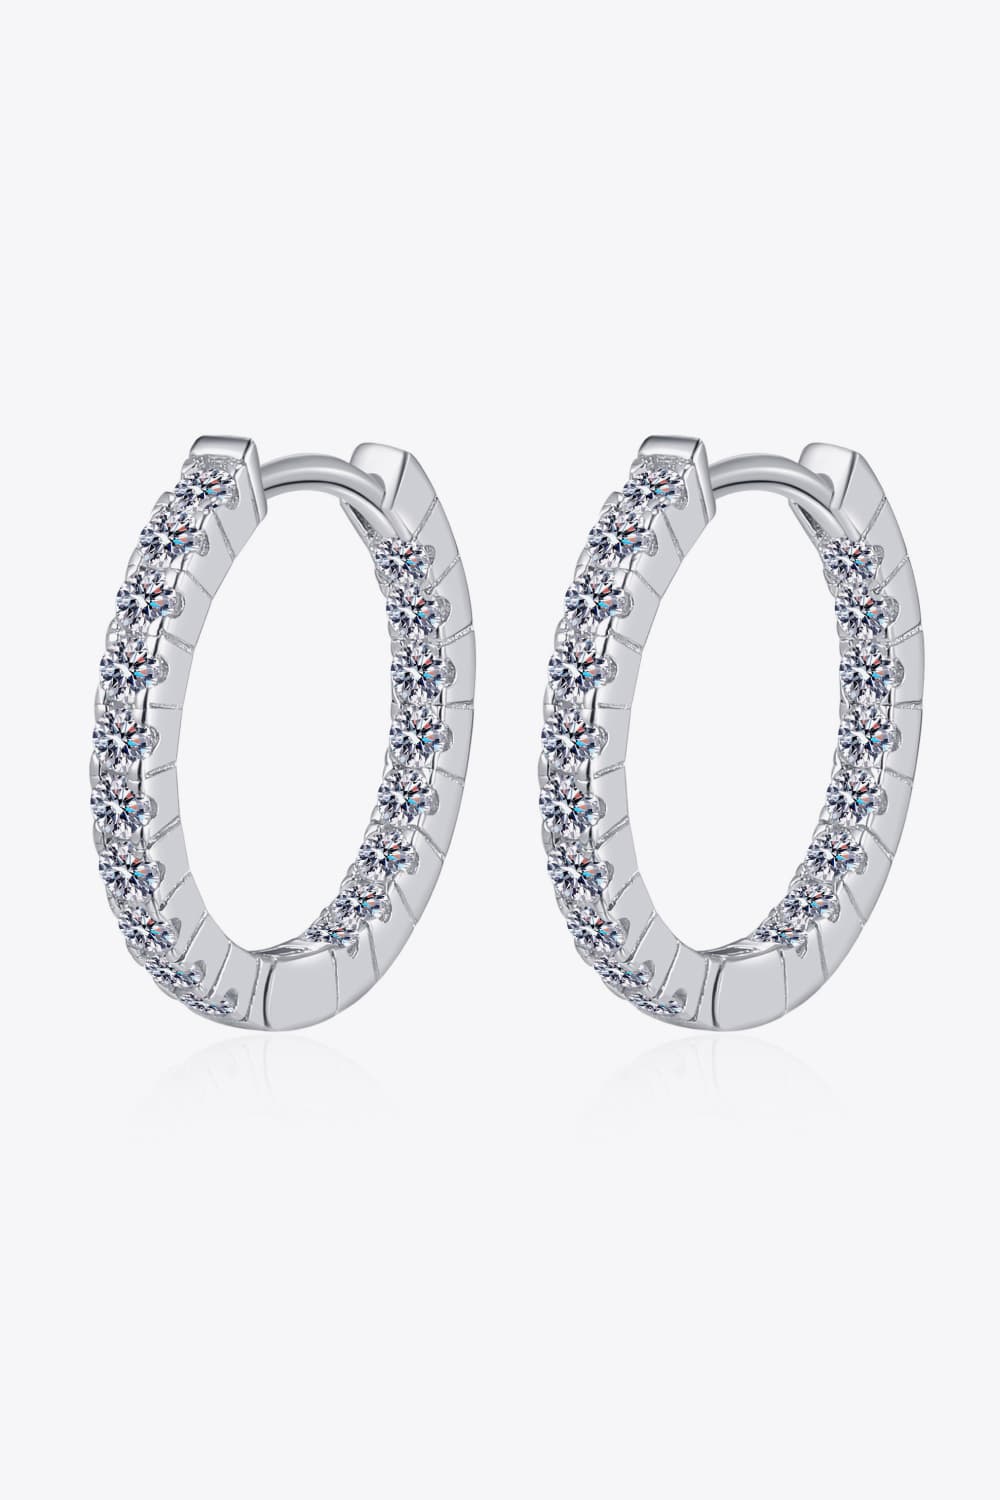 Moissanite 925 Sterling Silver Huggie Earrings - Earrings - FITGGINS